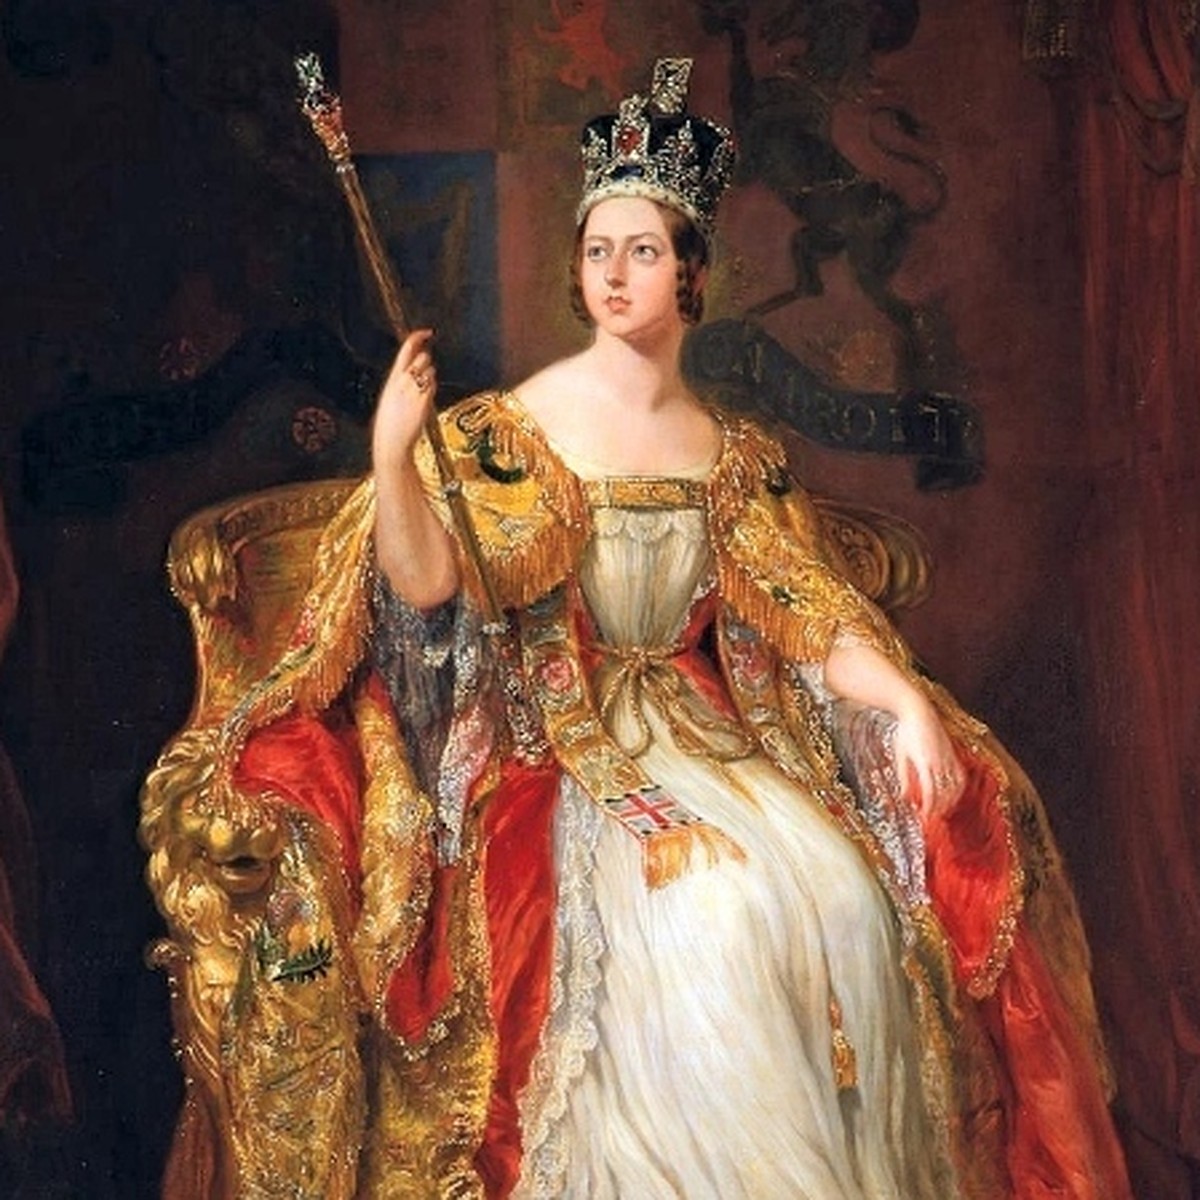 Королева Виктория на троне